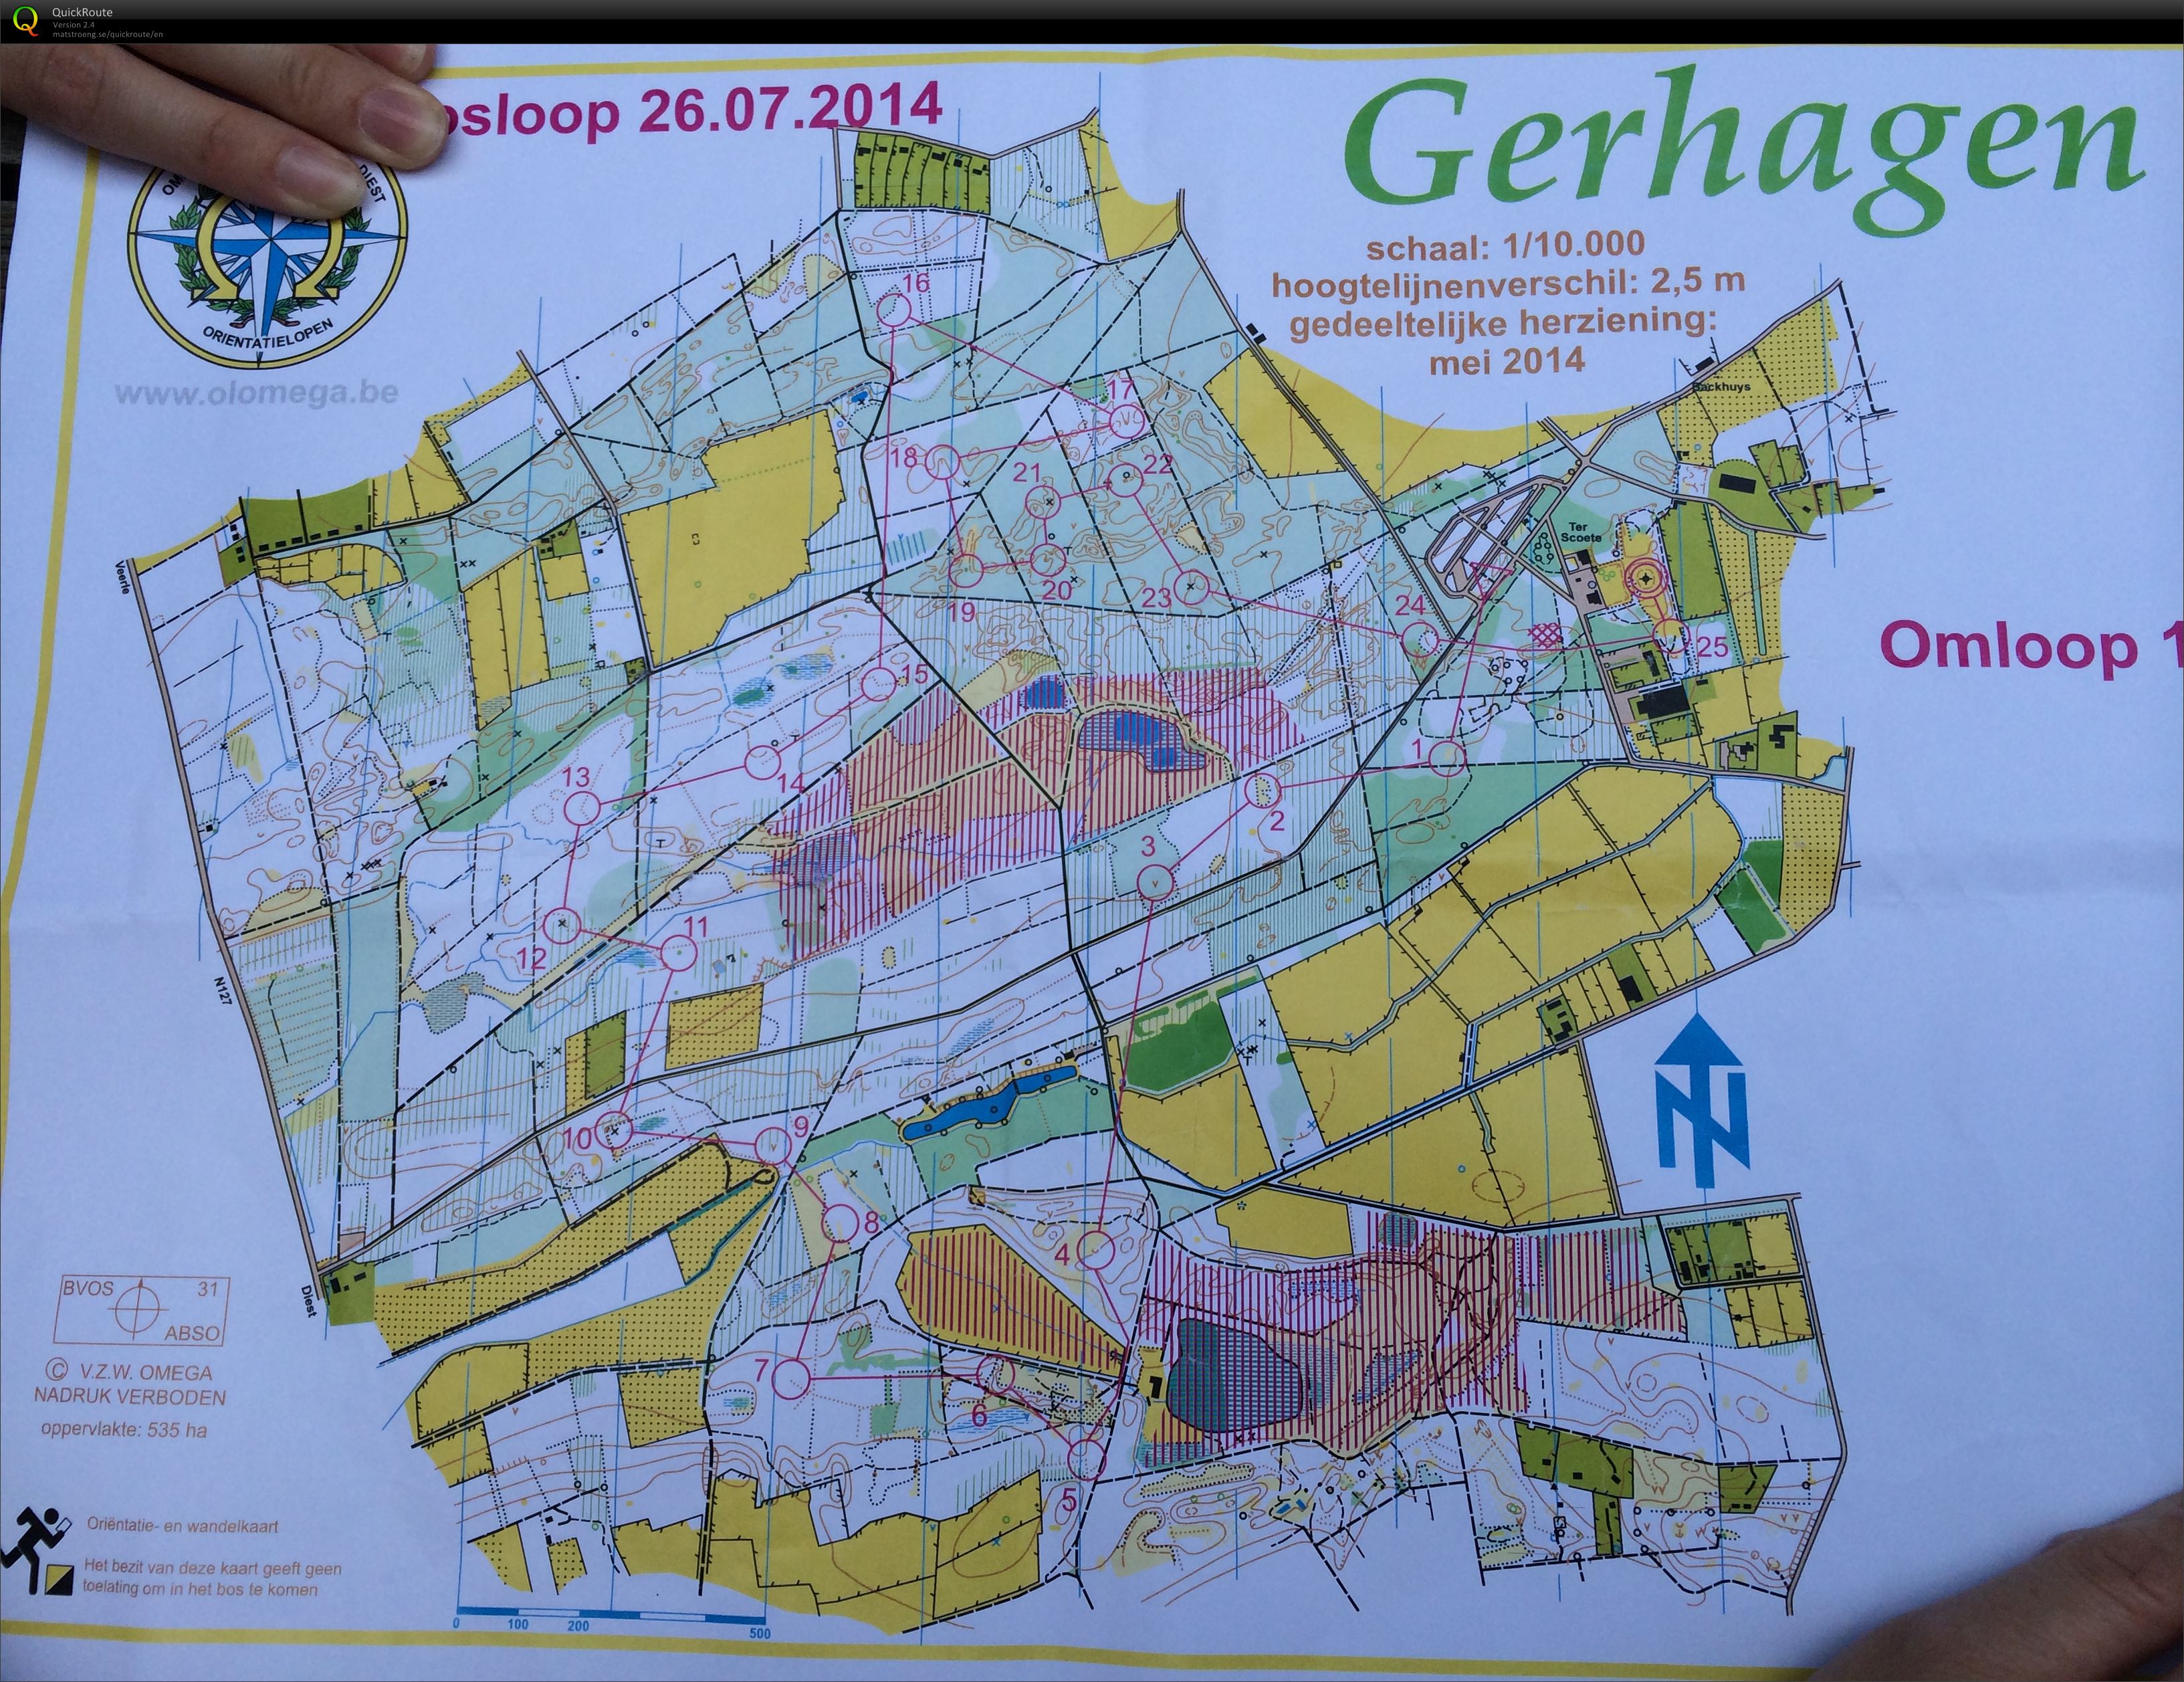 Regionale Gerhagen (26.07.2014)